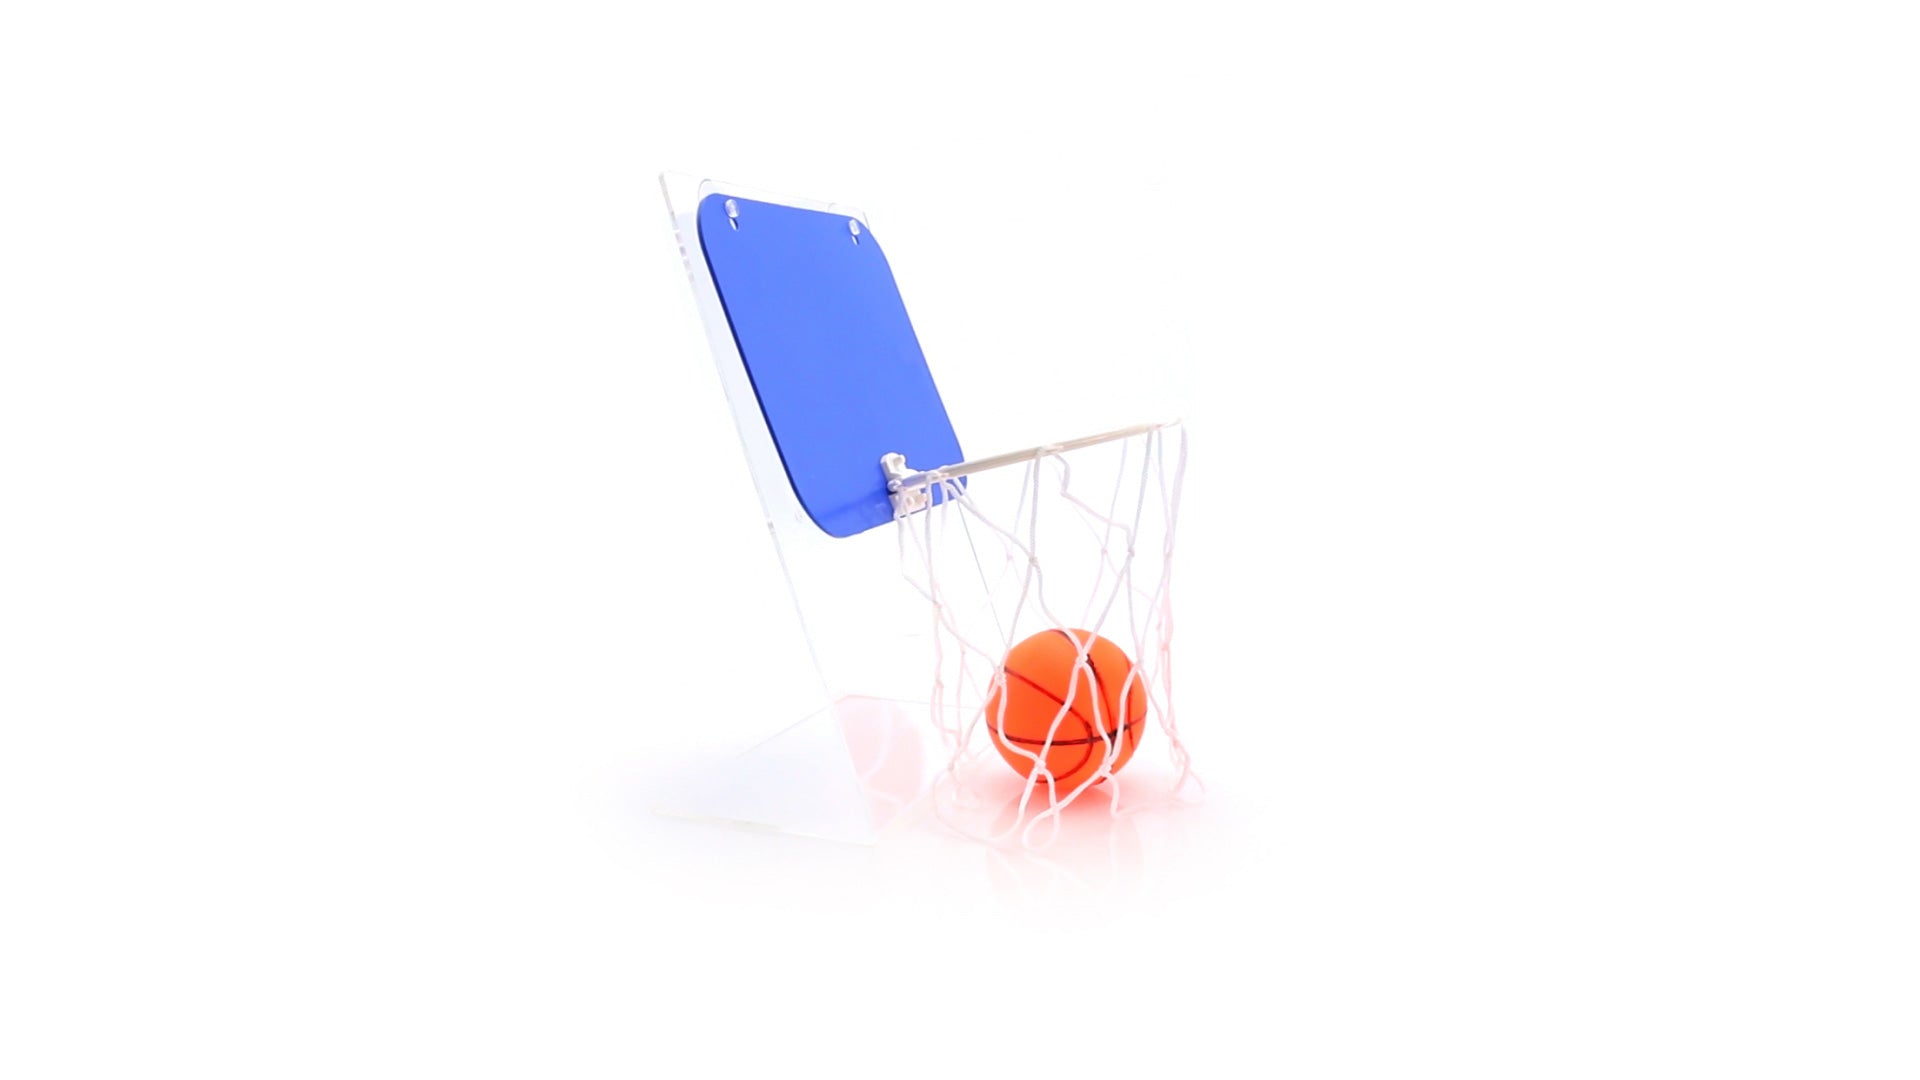 Balle pour minibasket incluse, PVC coloré